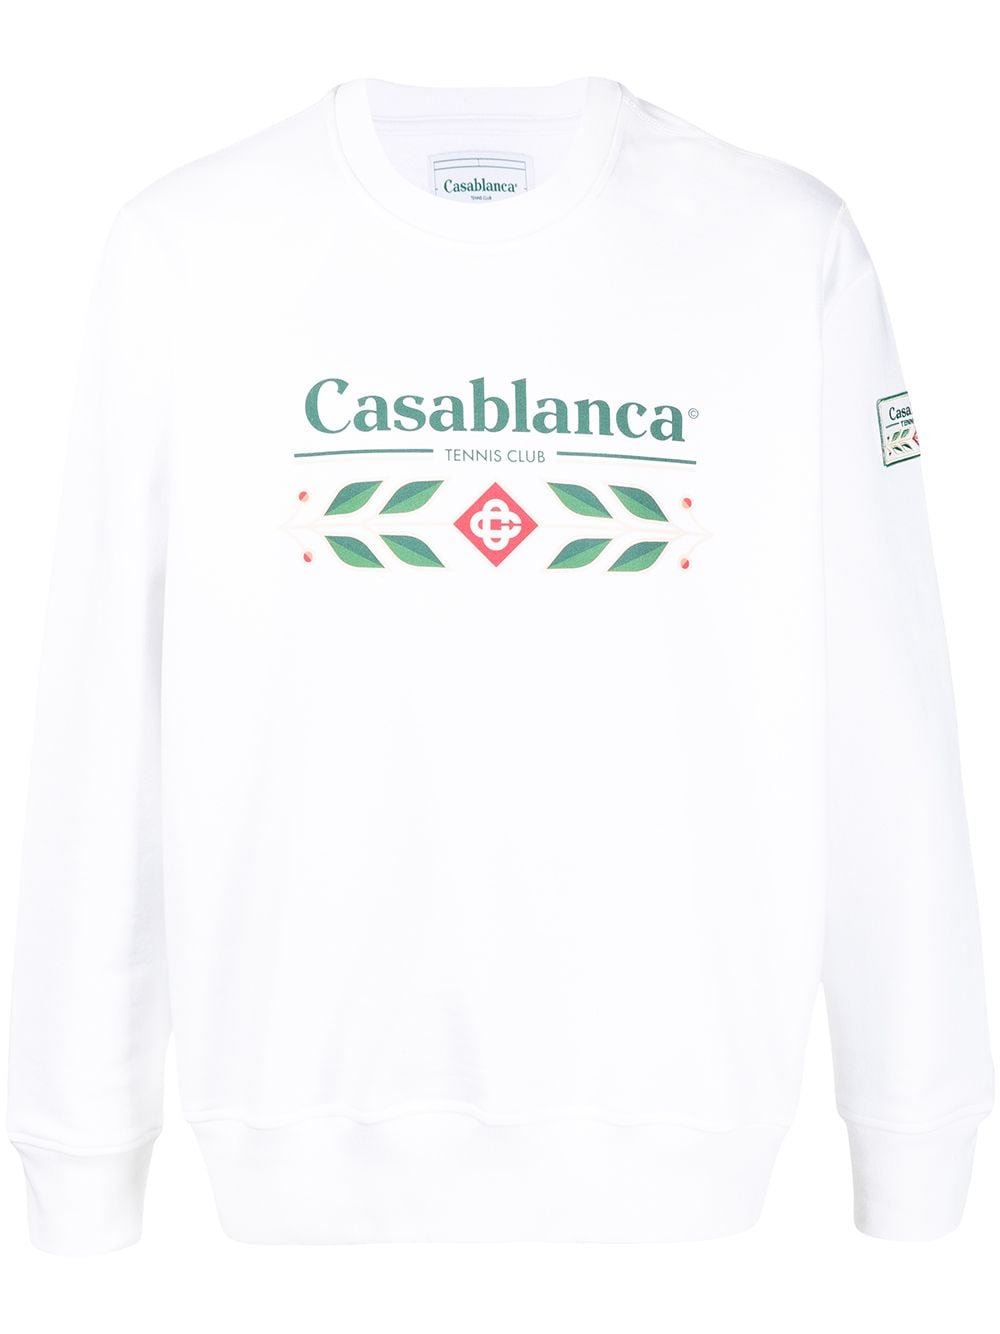 фото Casablanca толстовка tennis club с логотипом